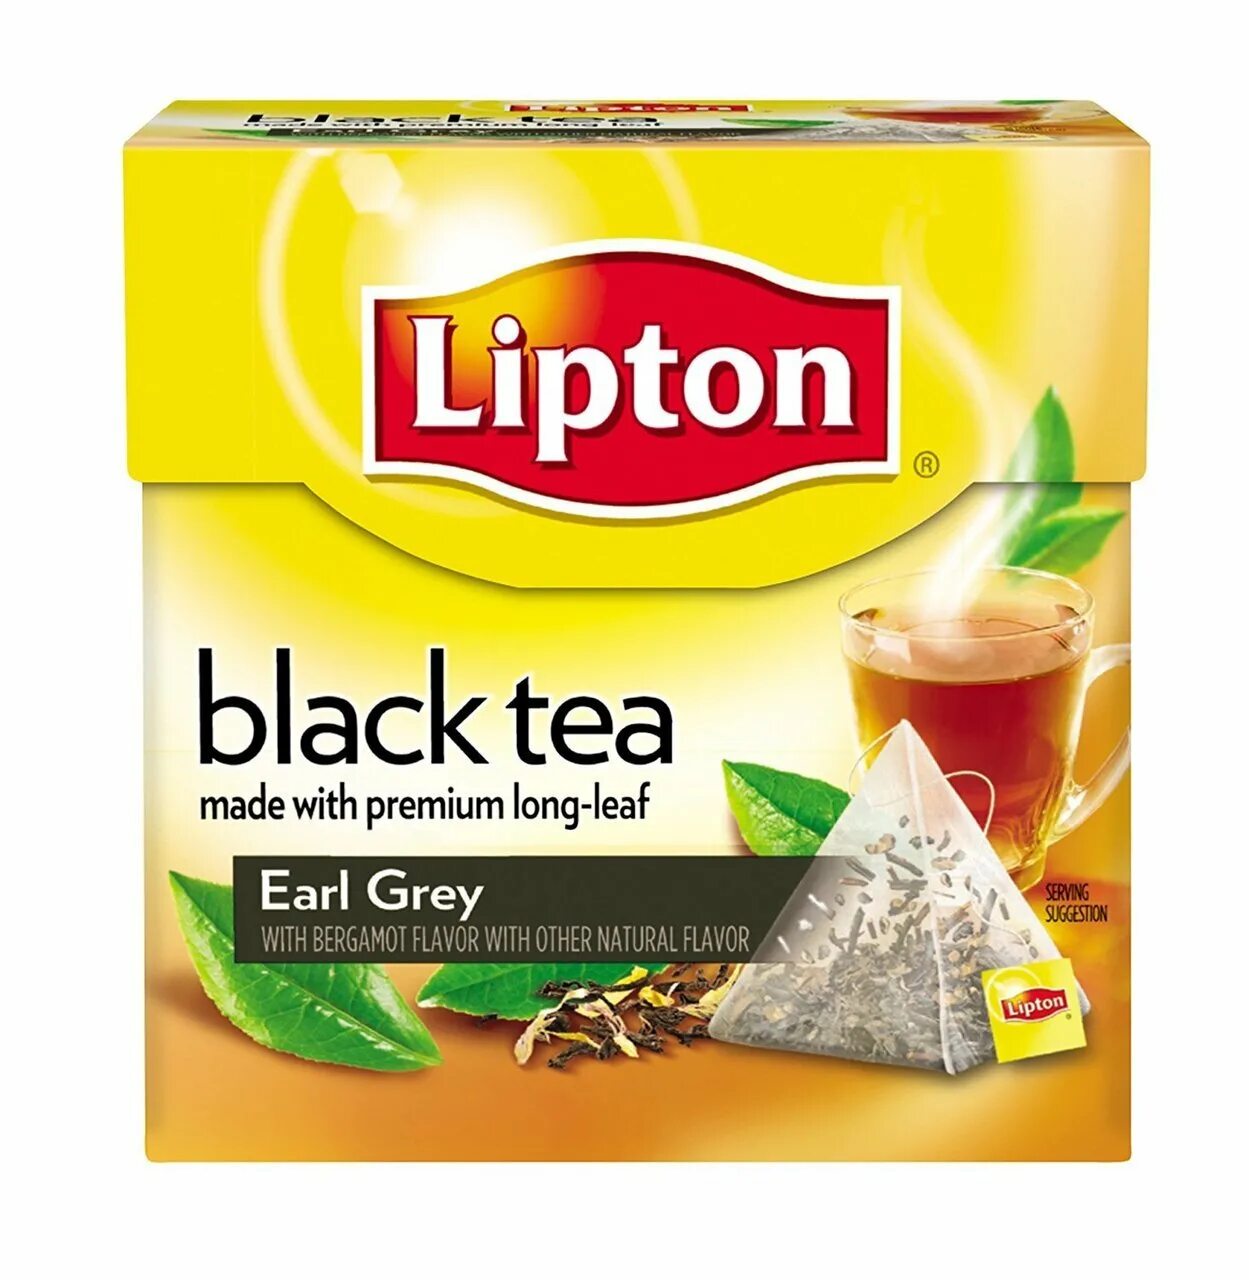 Черный Липтон Tea. Earl Grey чай Lipton. Липтон черный чай. Lipton English Breakfast.